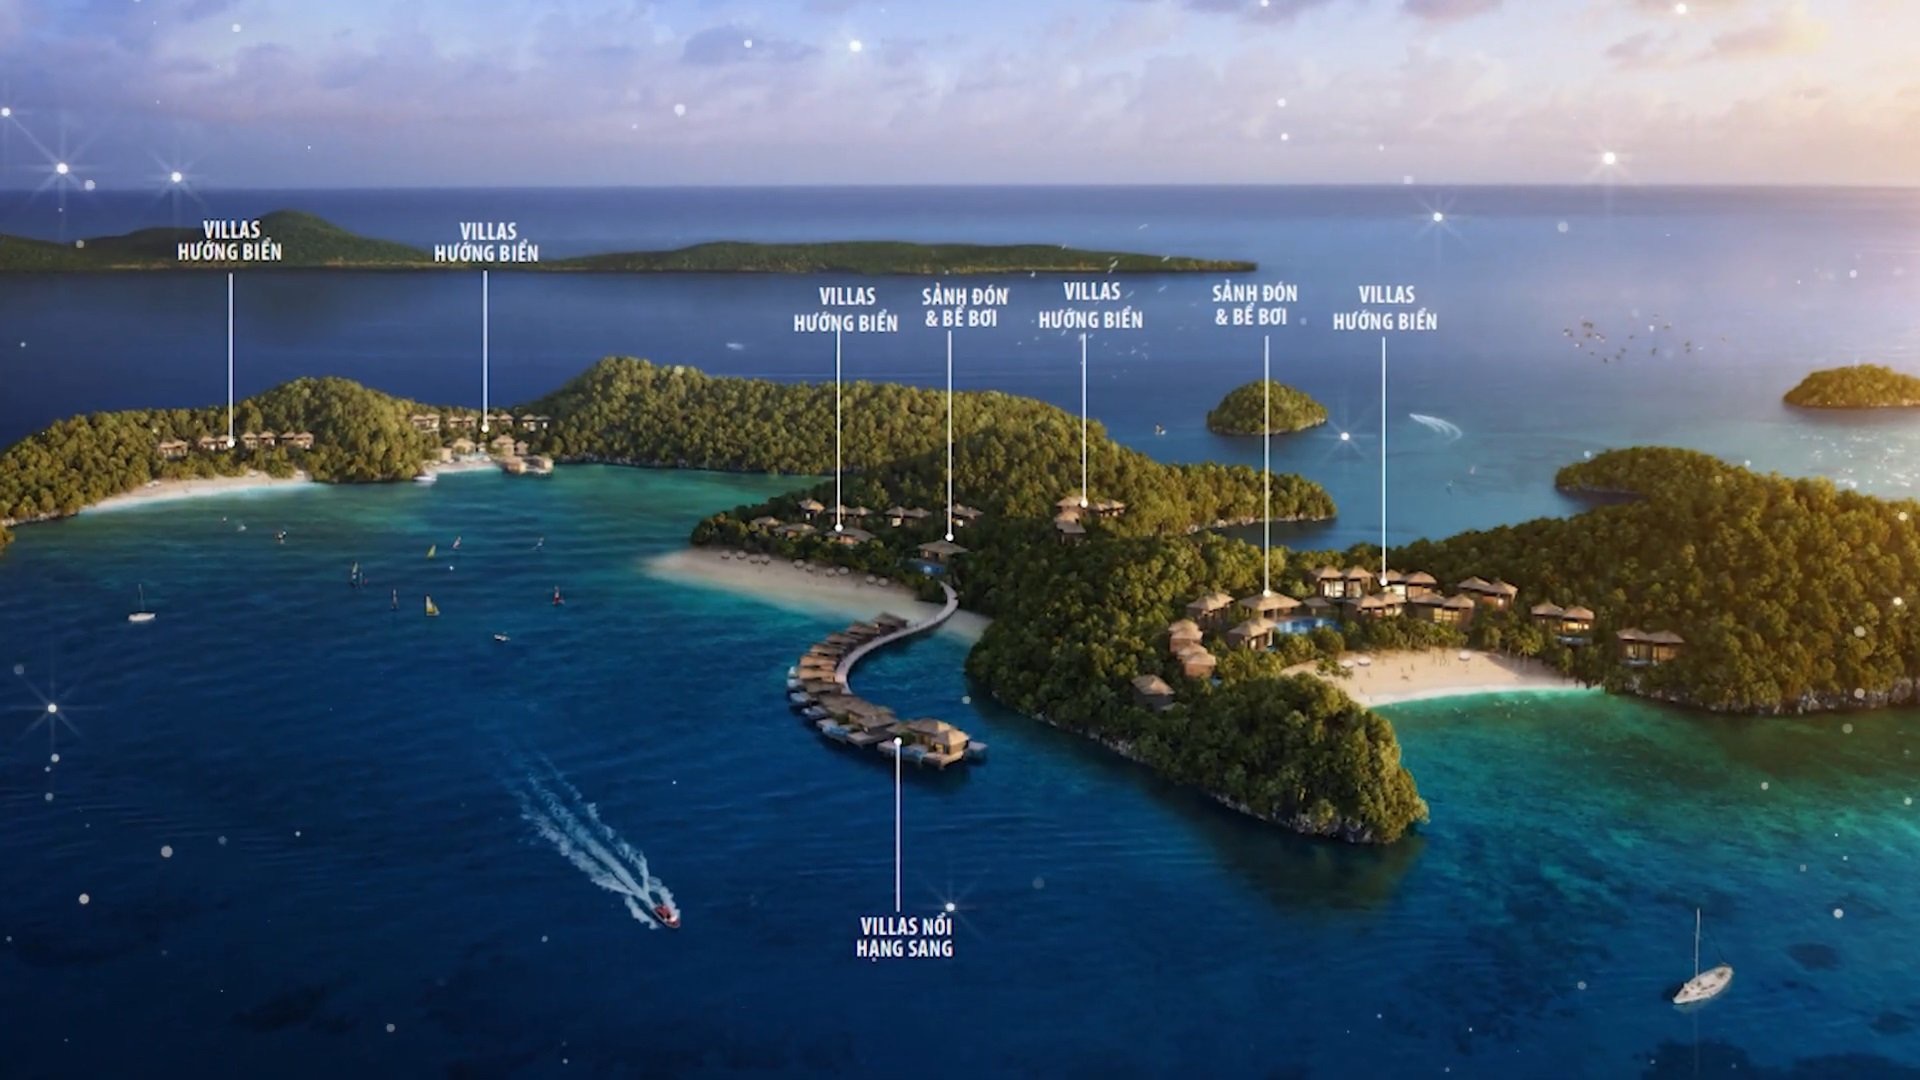 Monkey island Resort